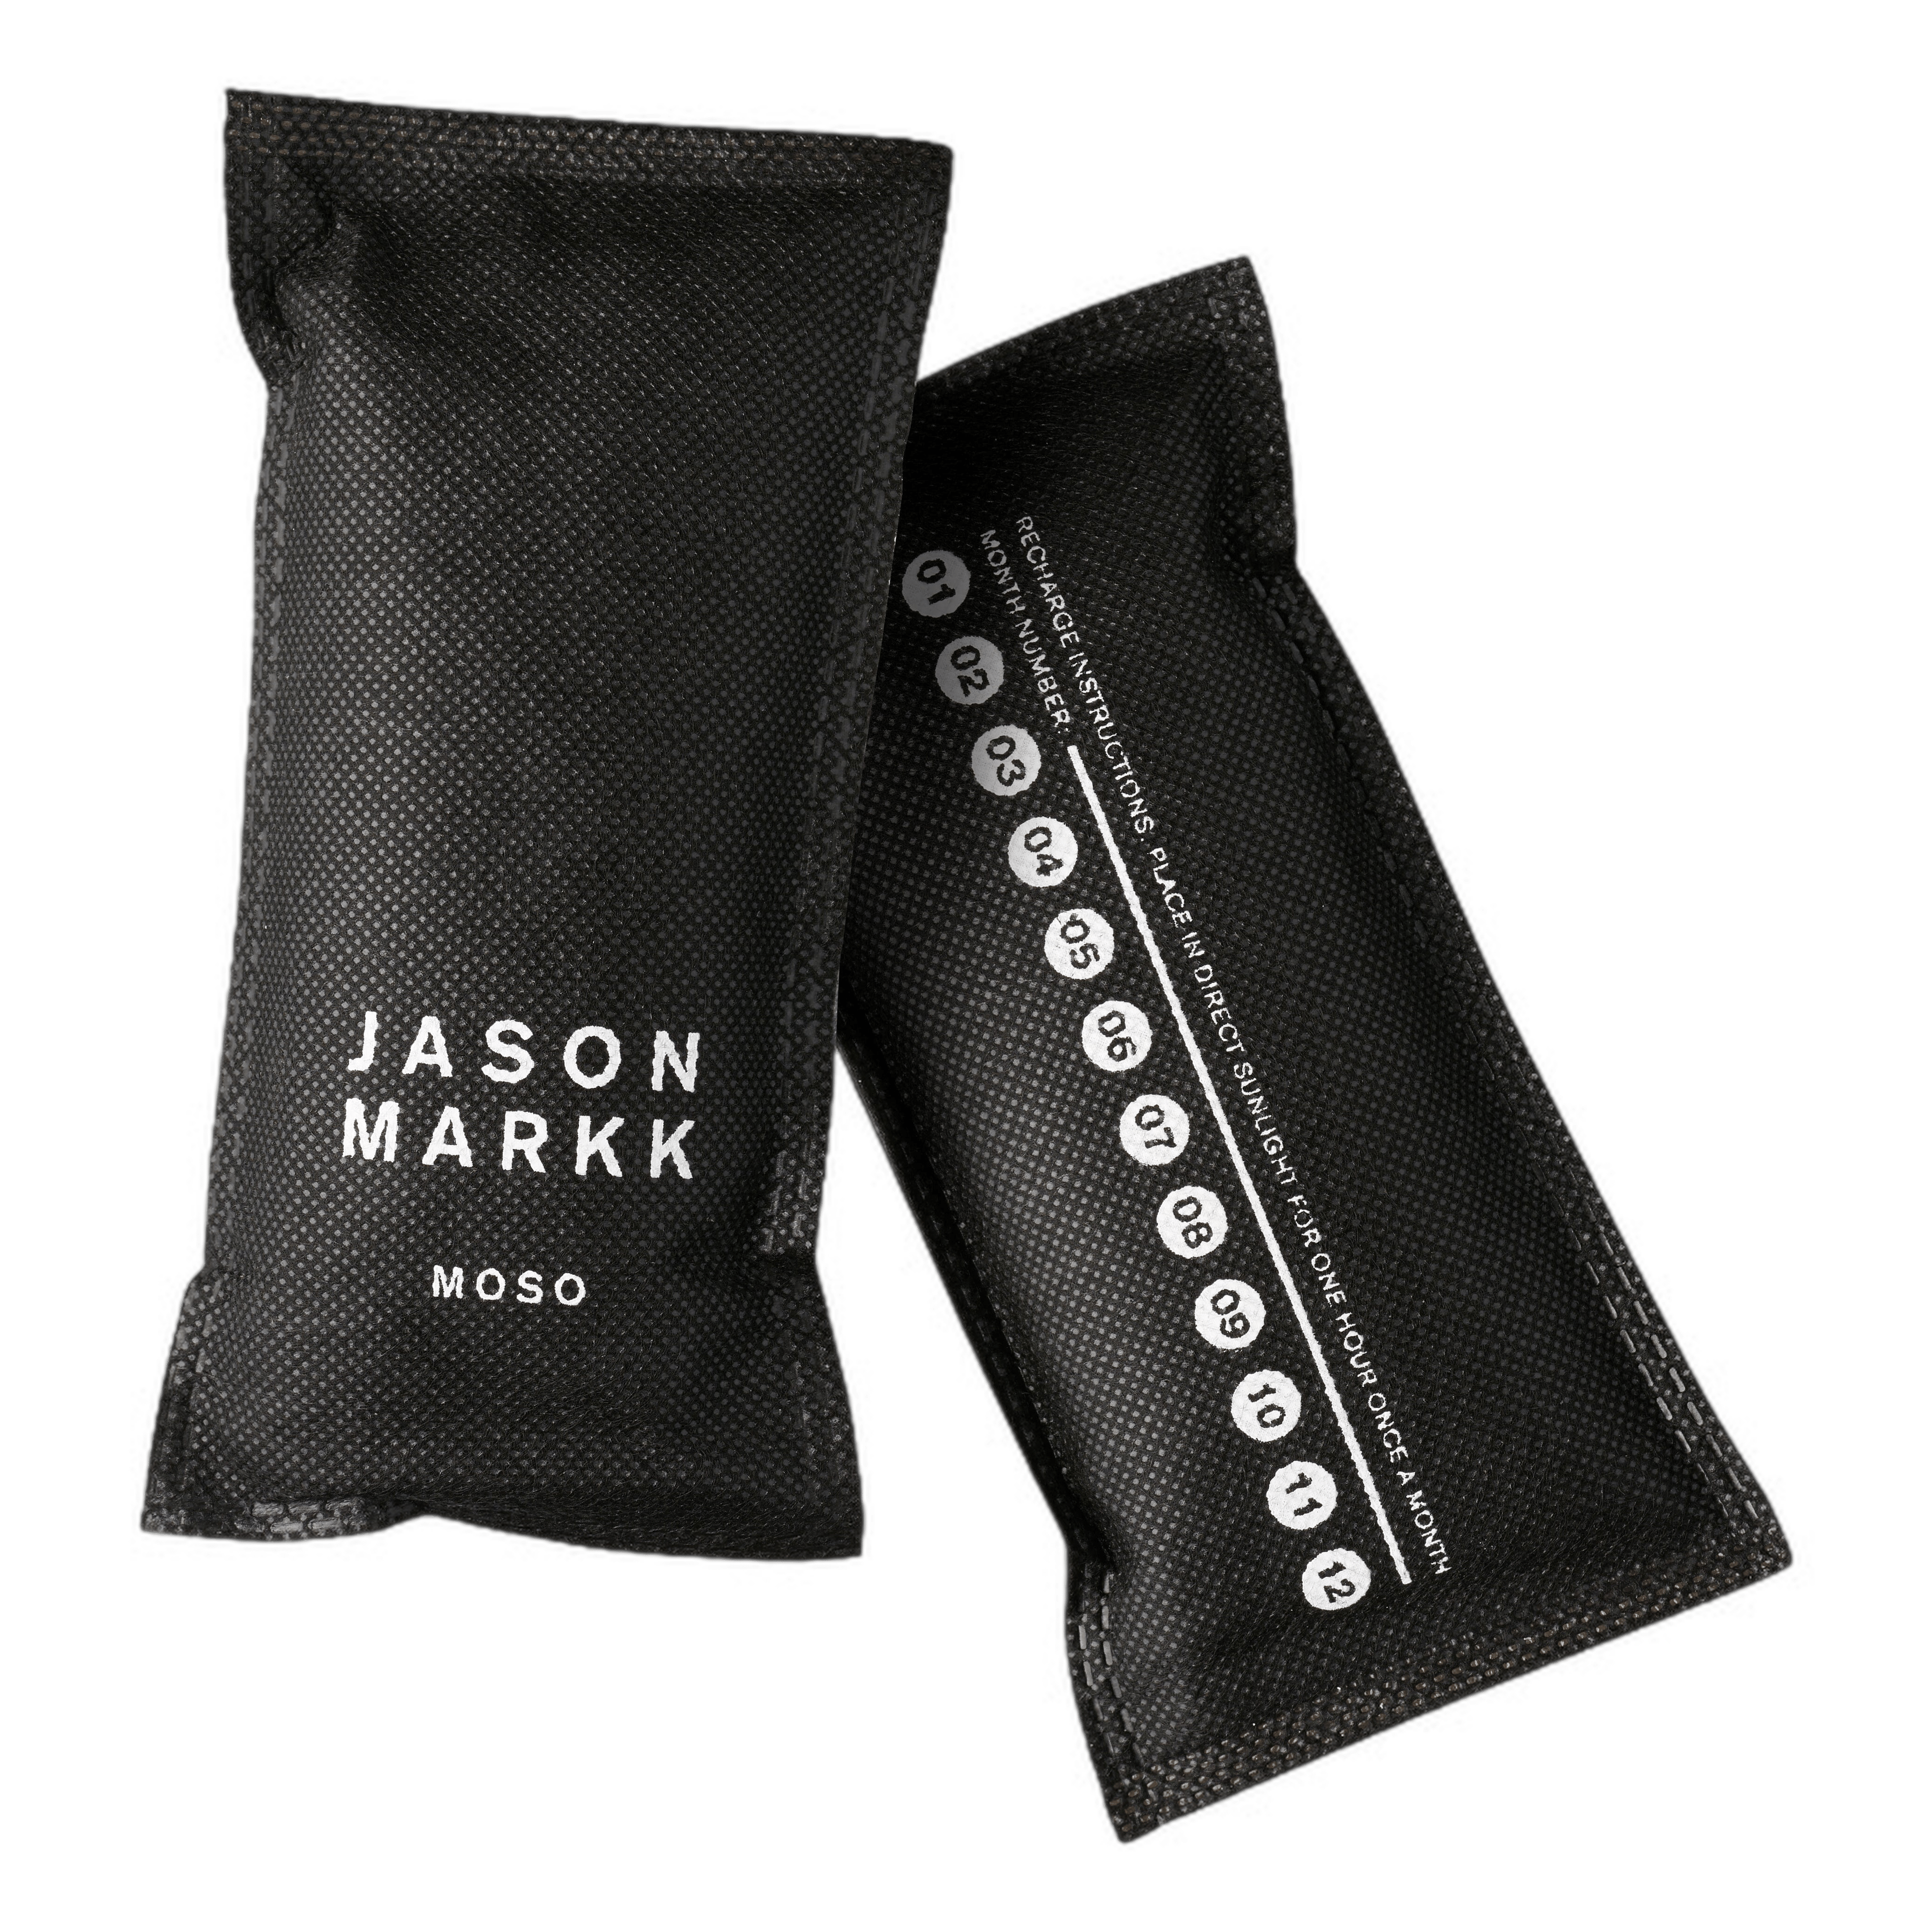 Jason Markk Moso Freshener skoinnlegg